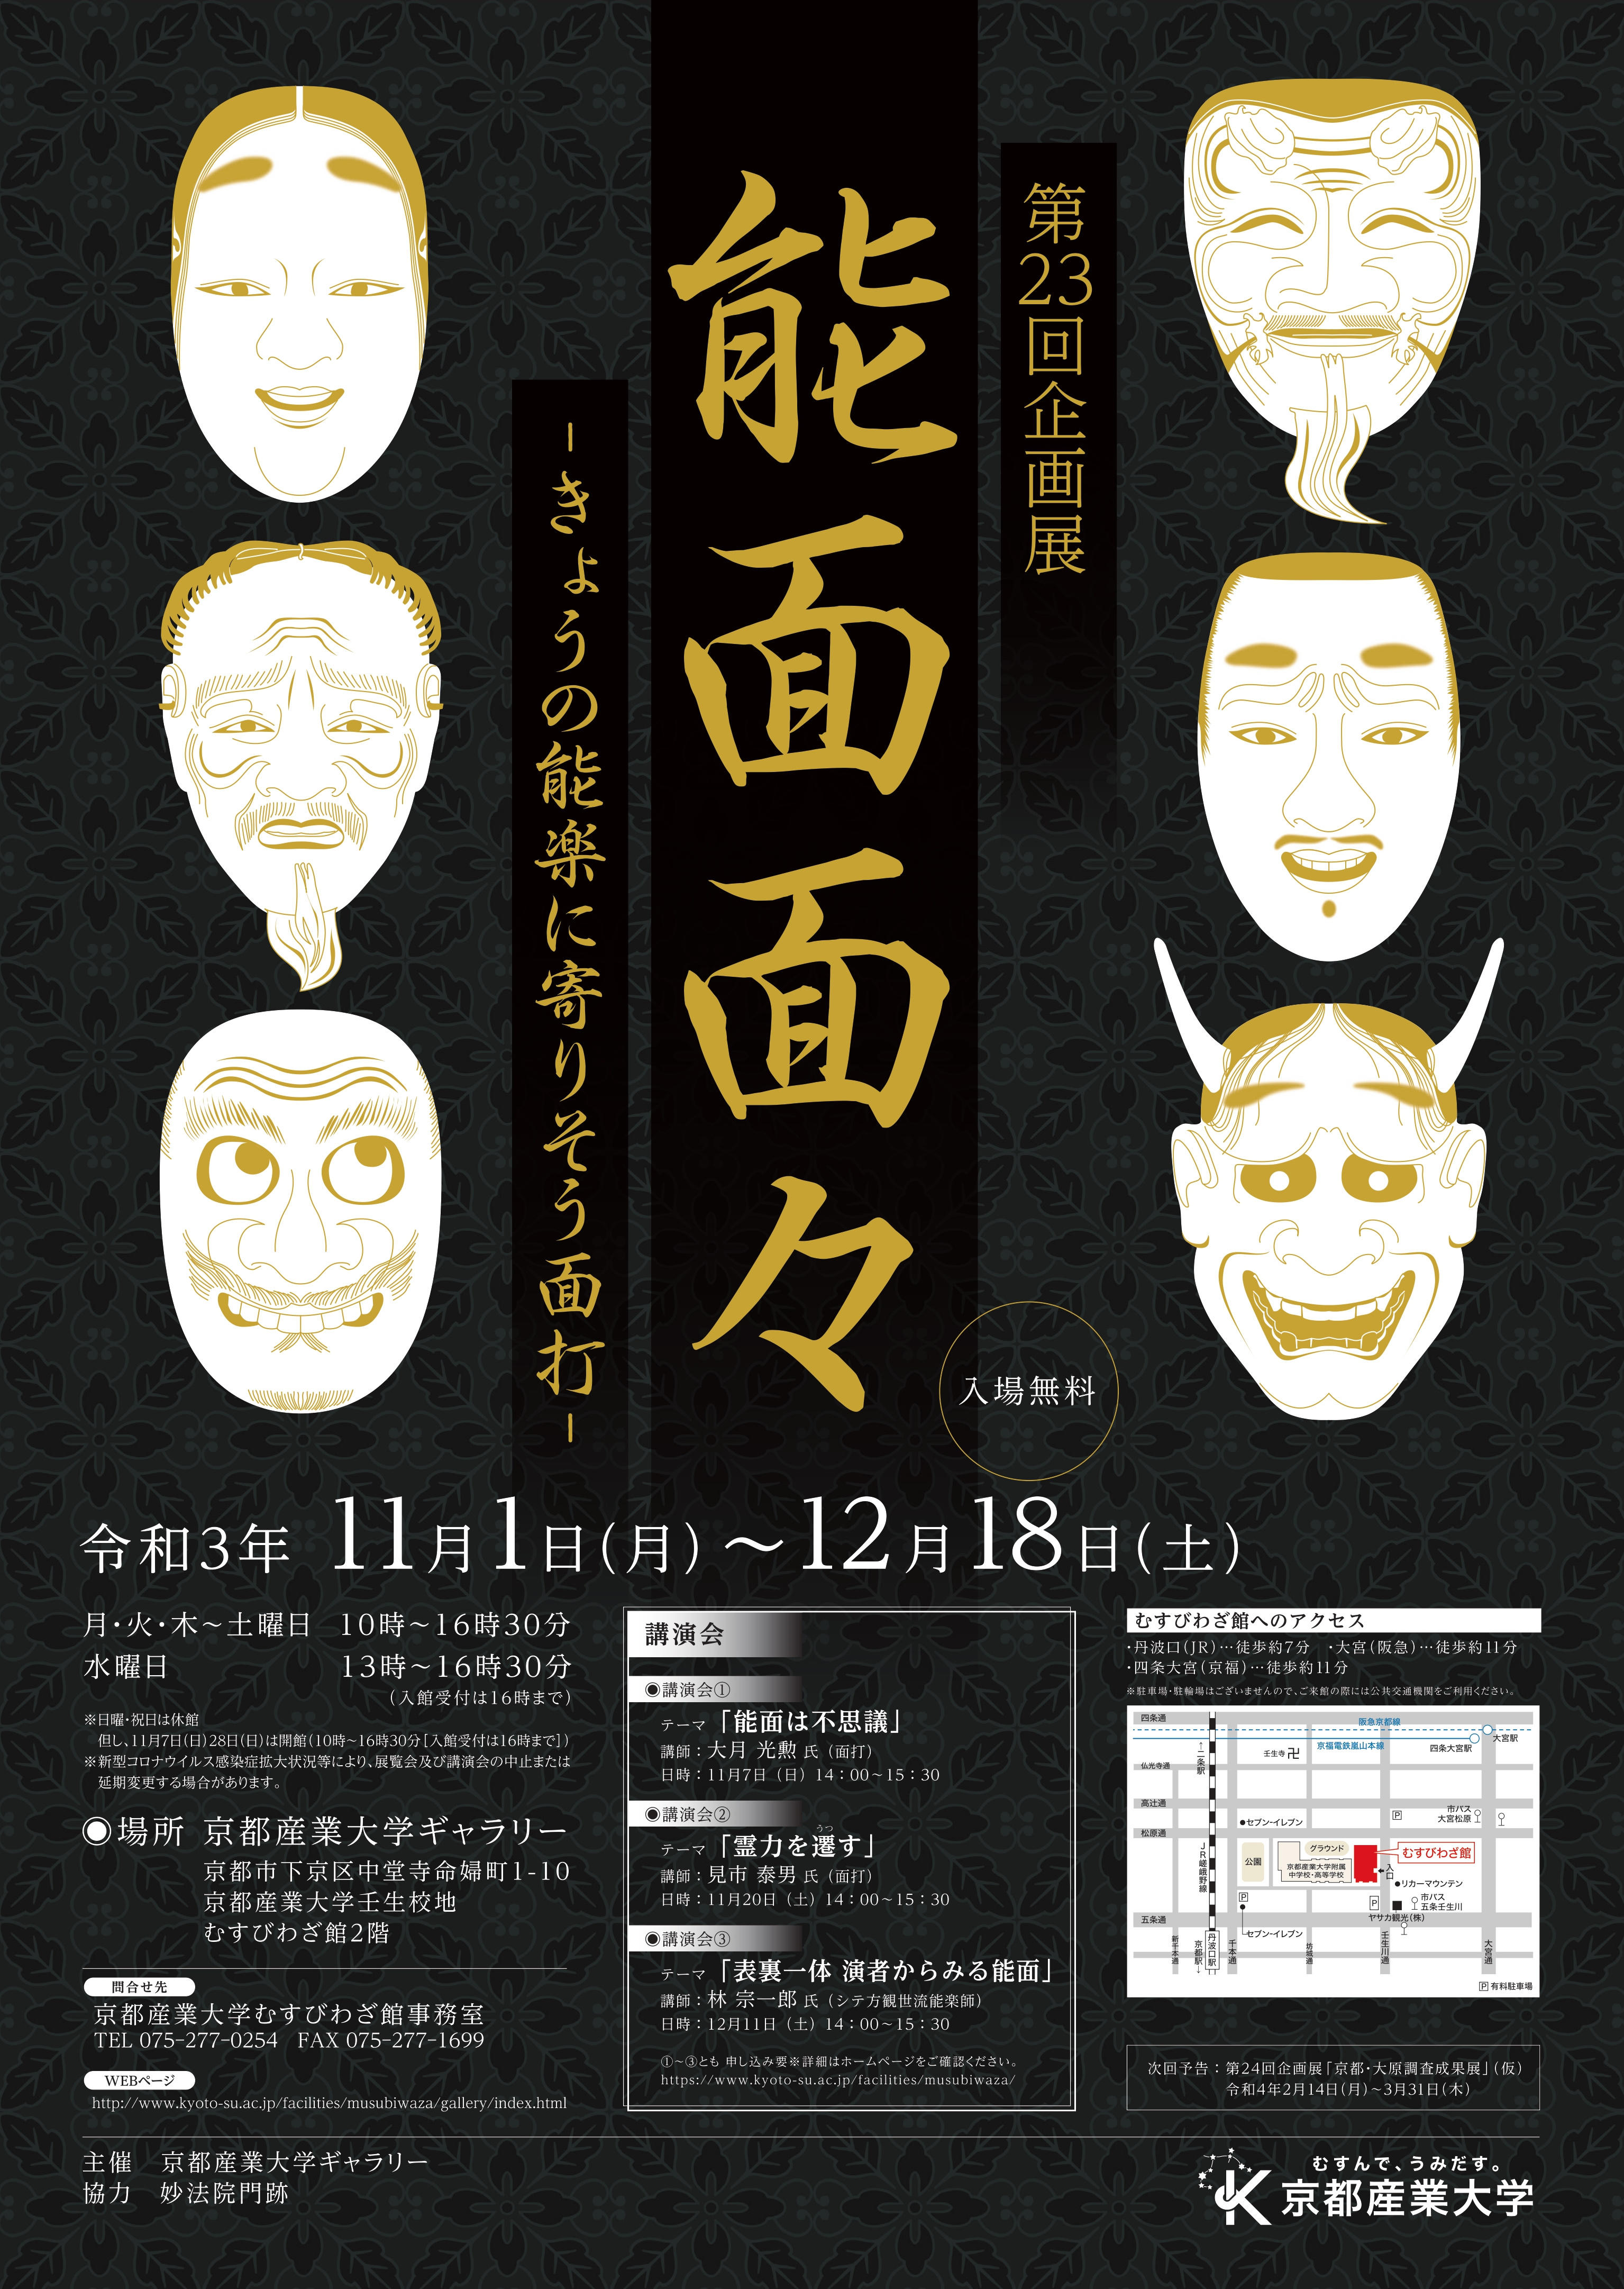 【京都産業大学】京都にゆかりのある12人の面打の作品が一堂に！第23回企画展「能面面々 -- きょうの能楽に寄りそう面打 -- 」開催中